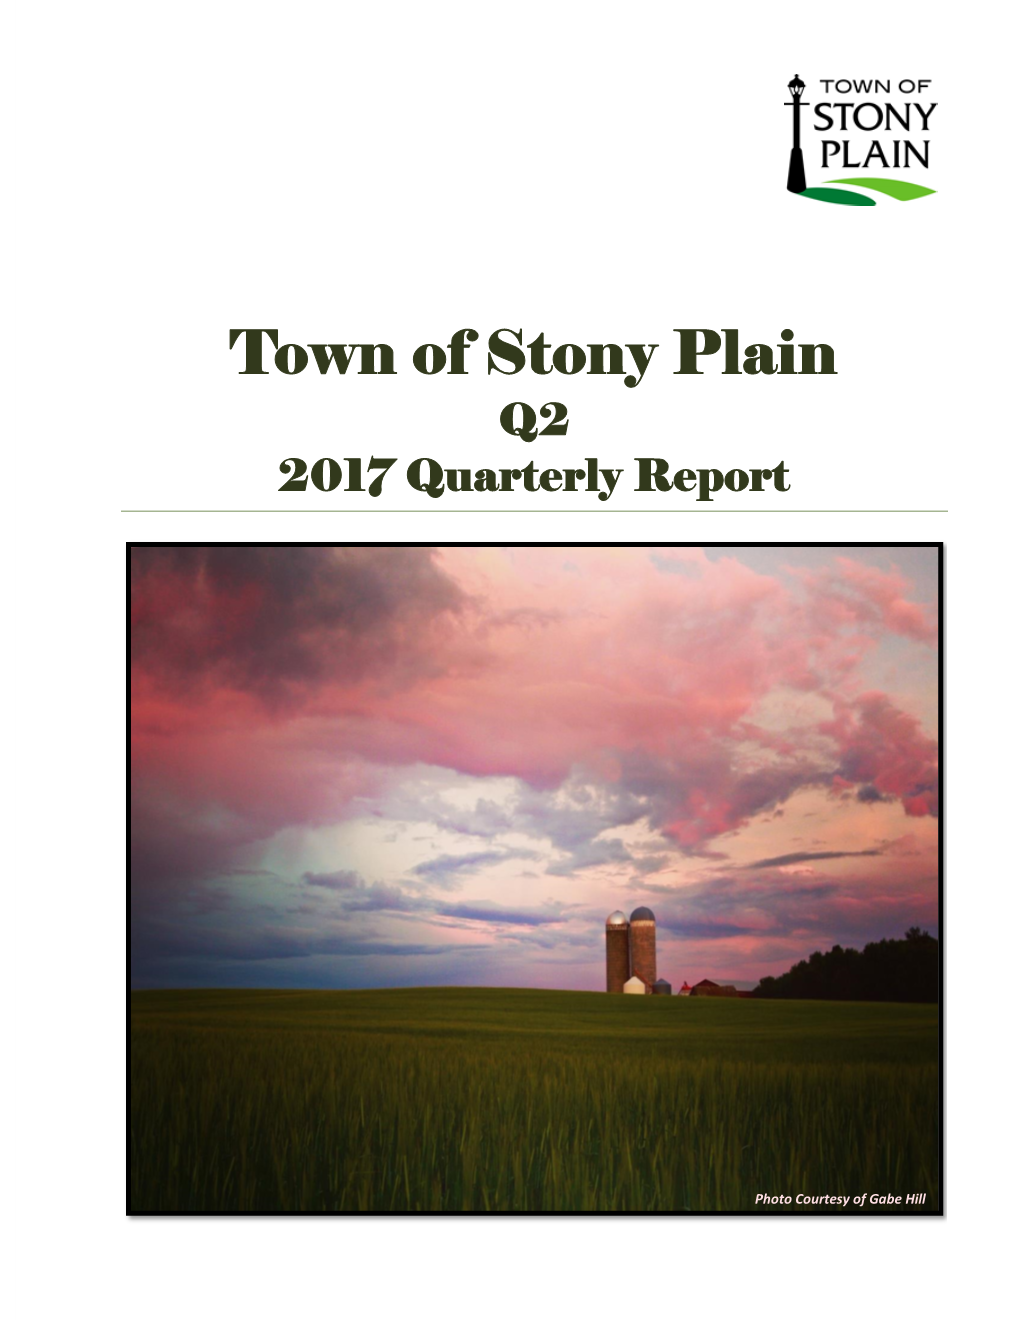 Q2 2017 Quarterly Report